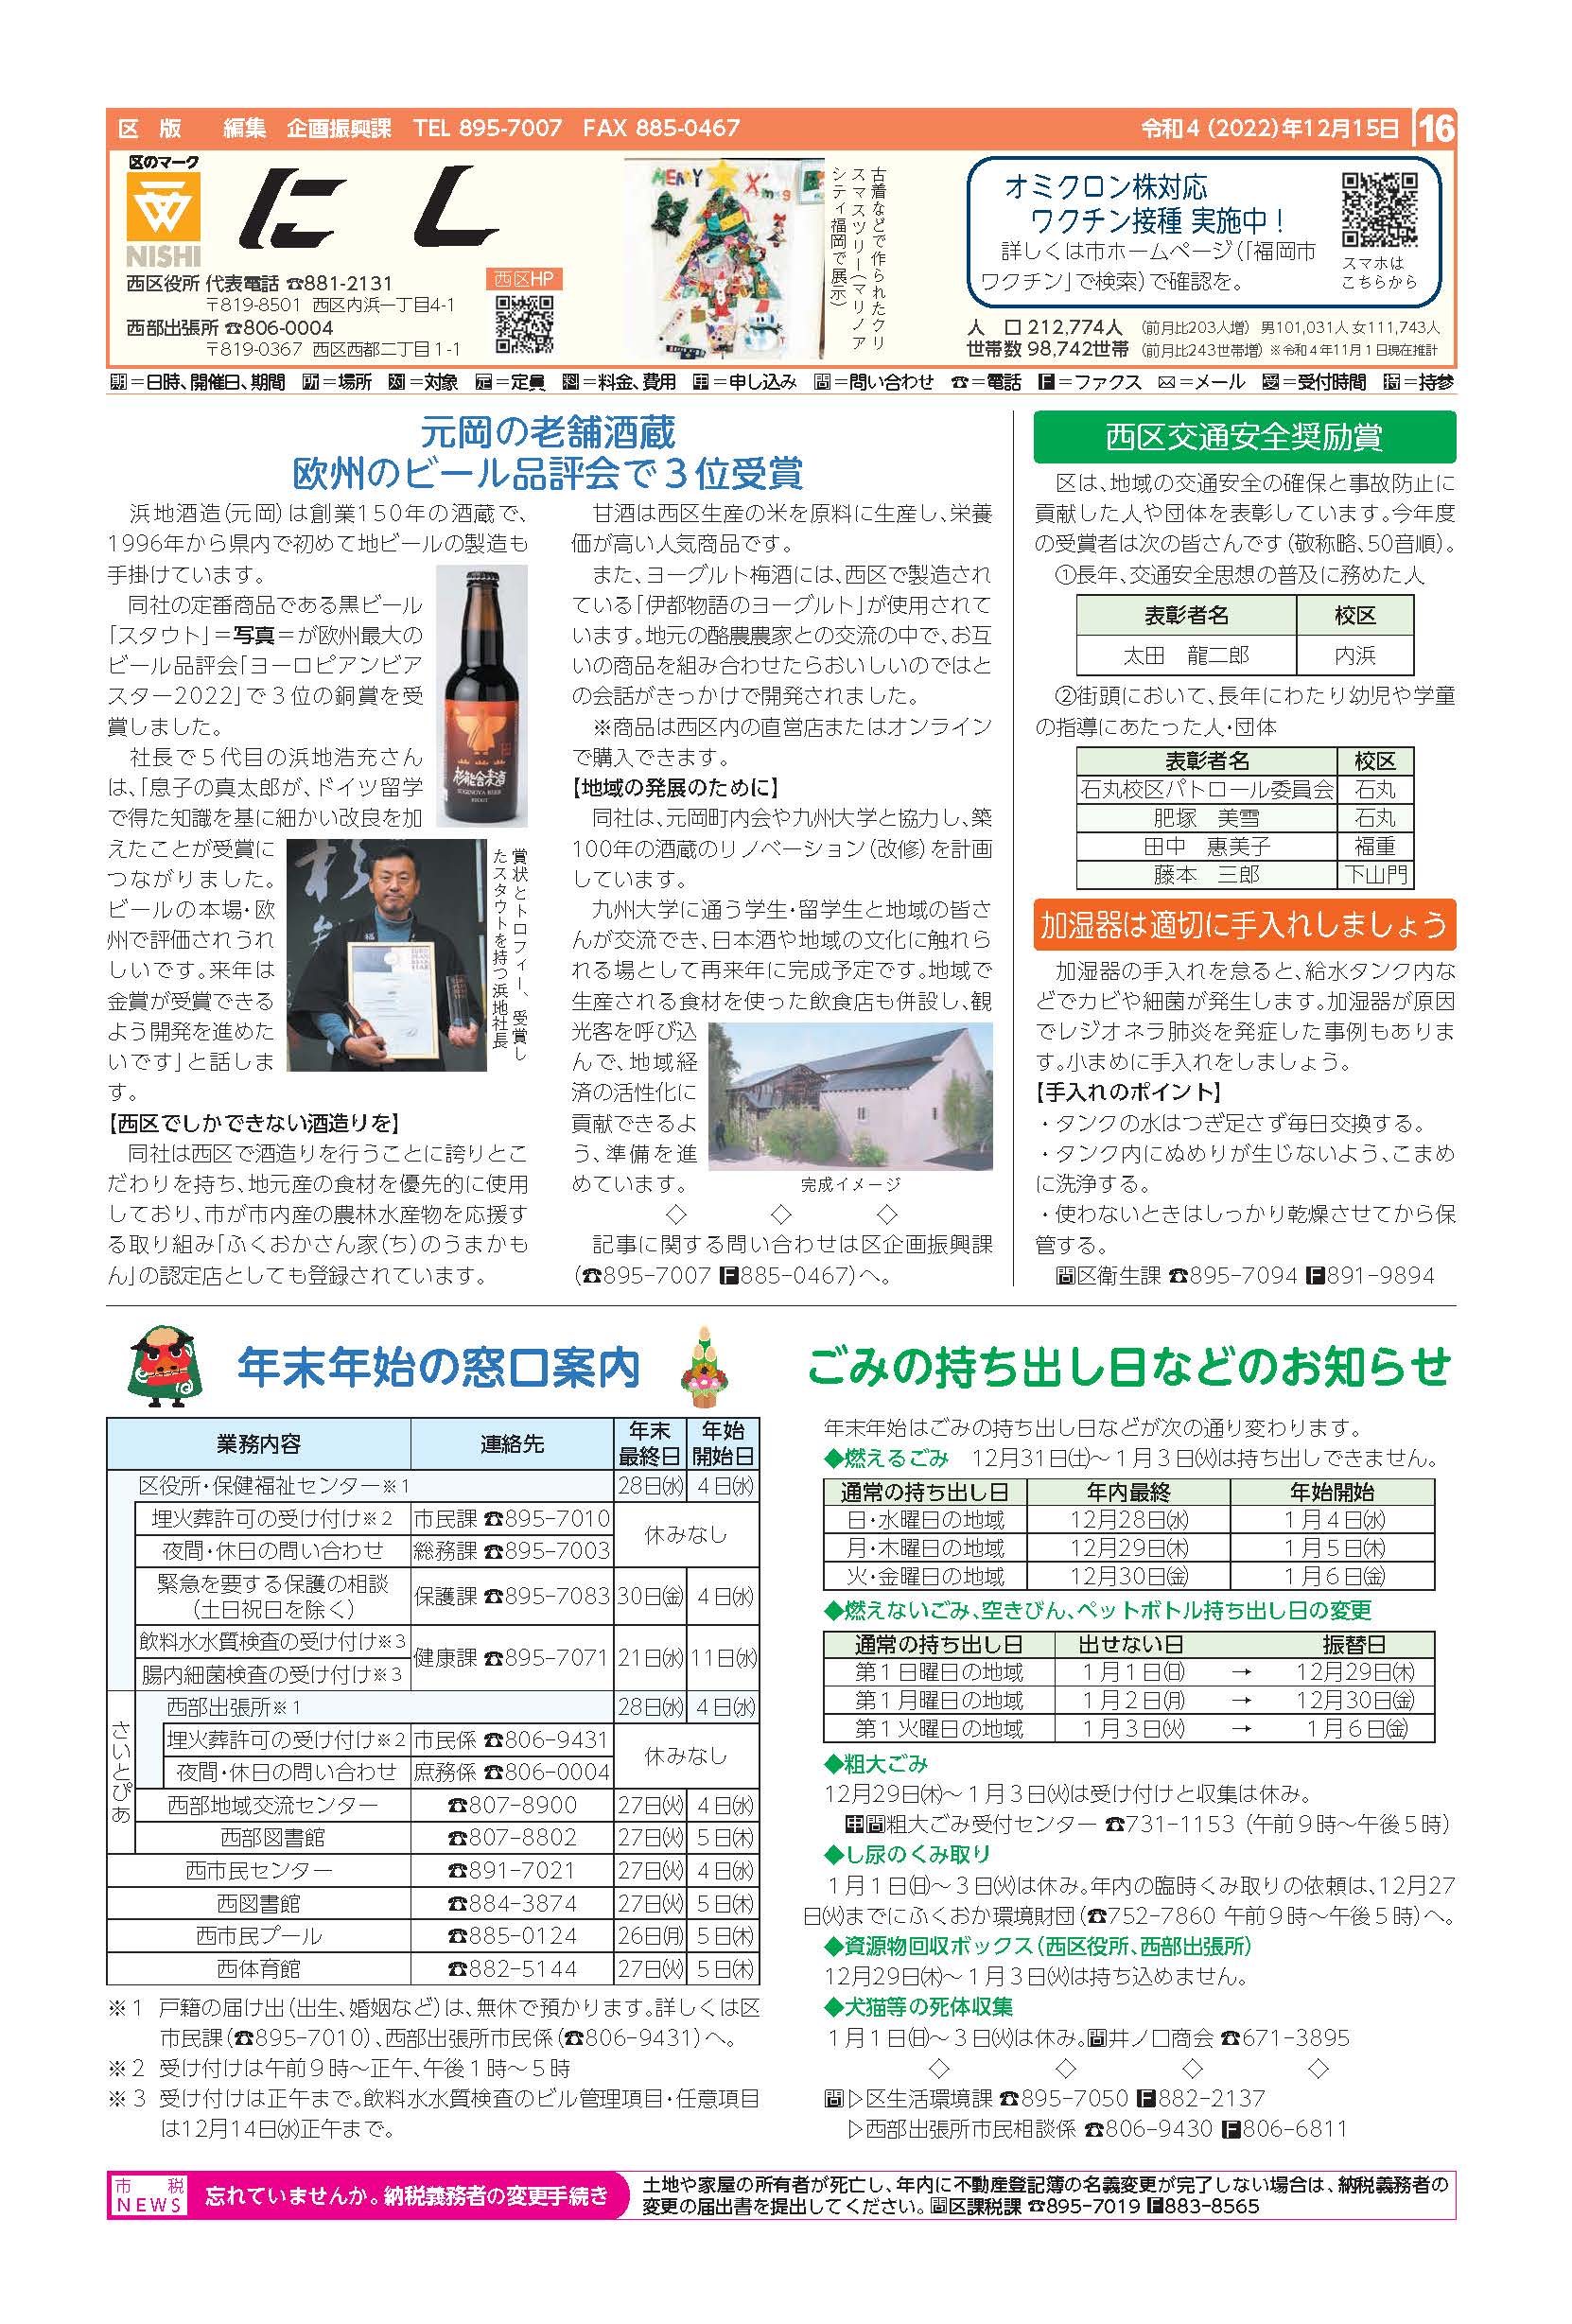 福岡市政だより2022年12月15日号の西区版の紙面画像